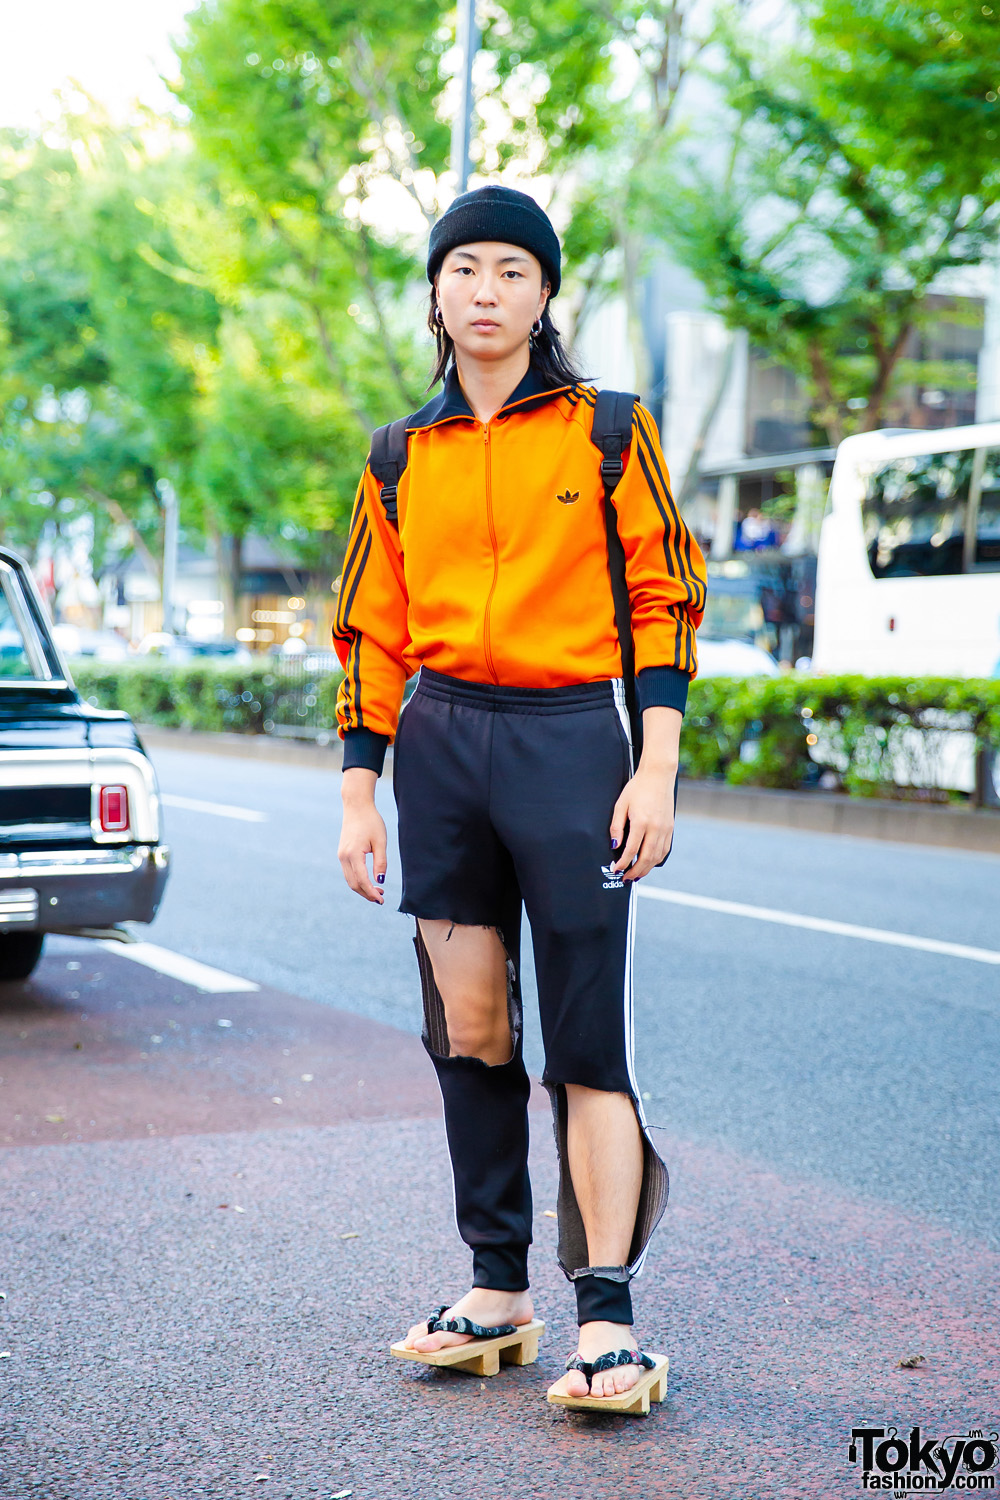 Tokyo Vintage & Handmade Streetwear w/ Orange Jacket, Black Track Pants & Geta Sandals